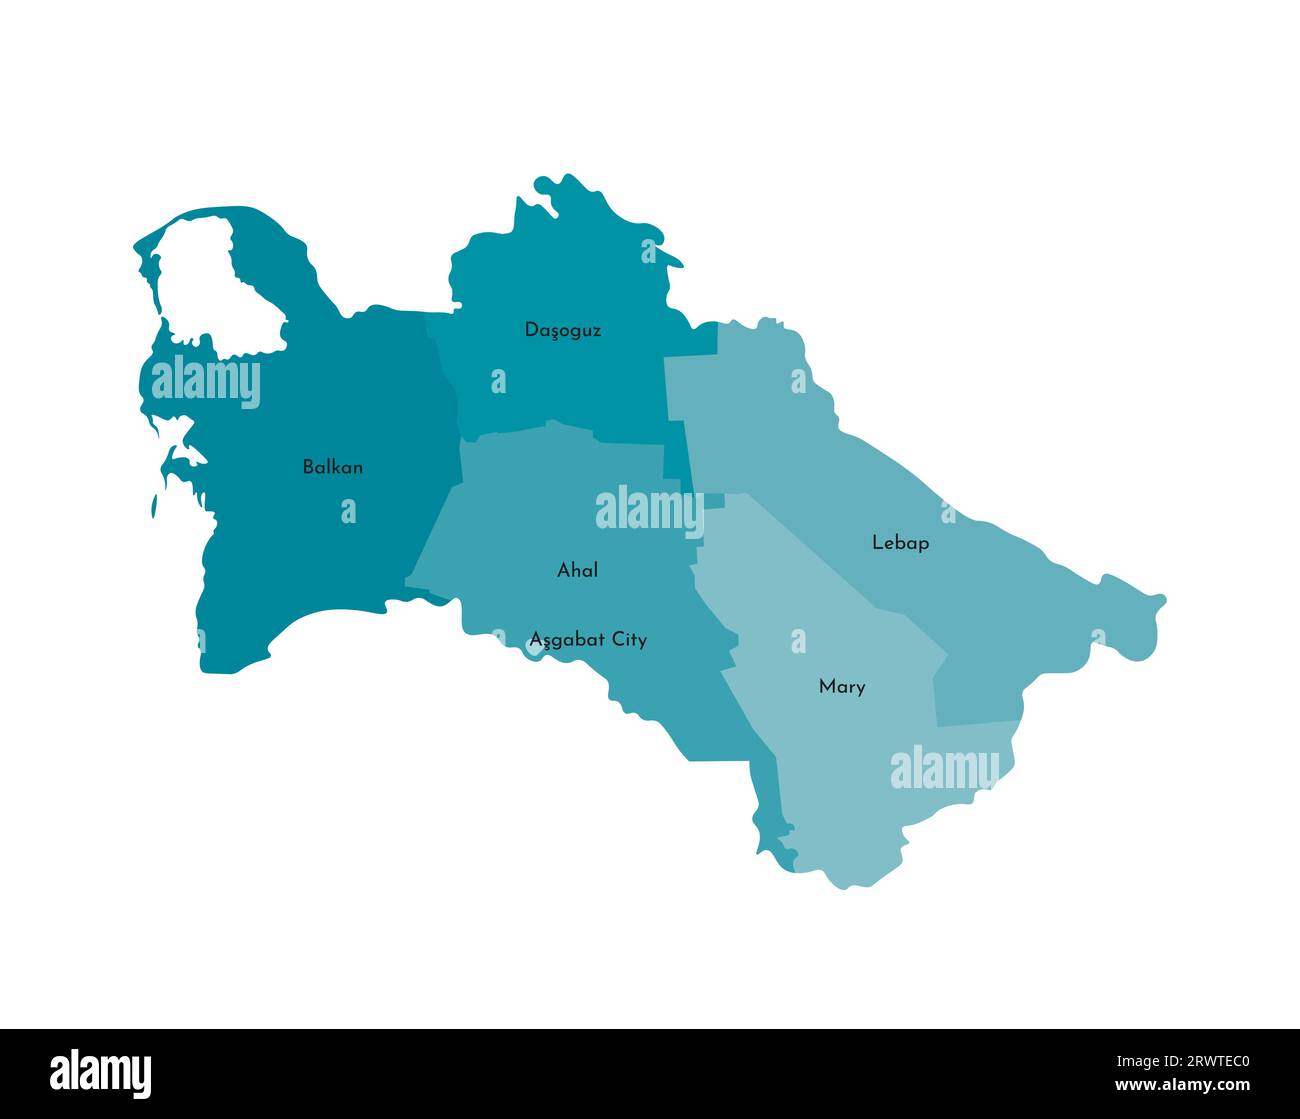 Vektorisolierte Darstellung einer vereinfachten Verwaltungskarte Turkmenistans. Grenzen und Namen der Bezirke (Regionen). Buntes blaues Khaki-Silh Stock Vektor